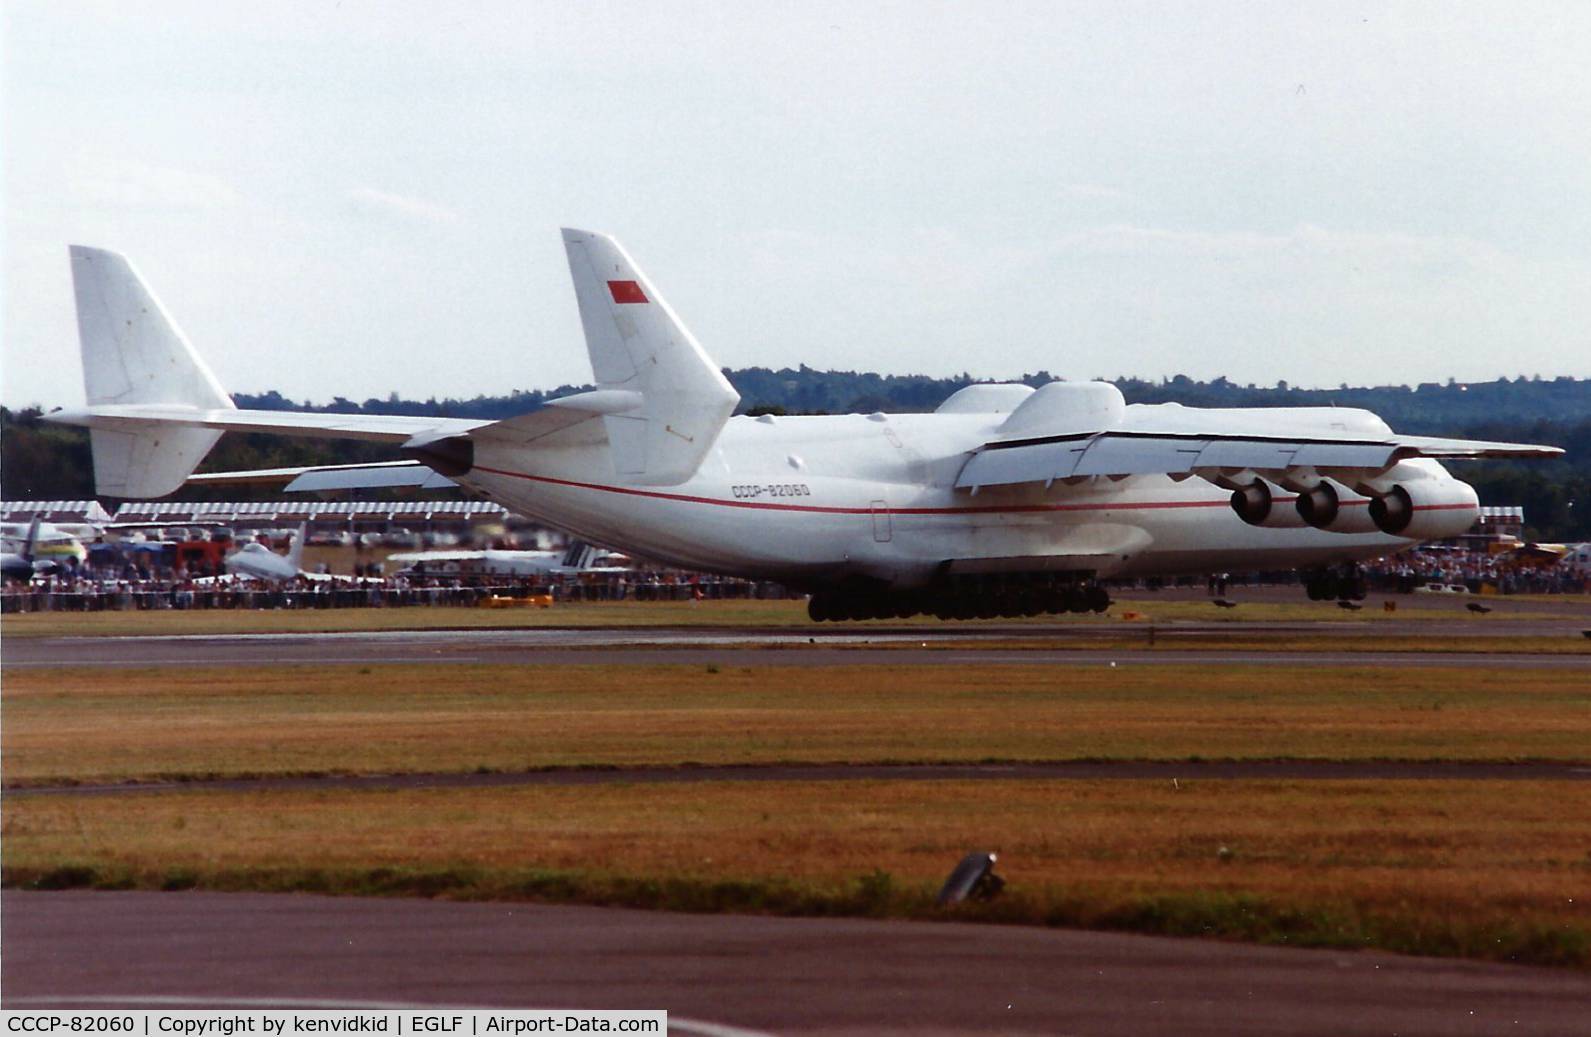 CCCP-82060, 1988 Antonov An-225 Mriya C/N 19530503763, At the 1990 Farnborough International Air Show.